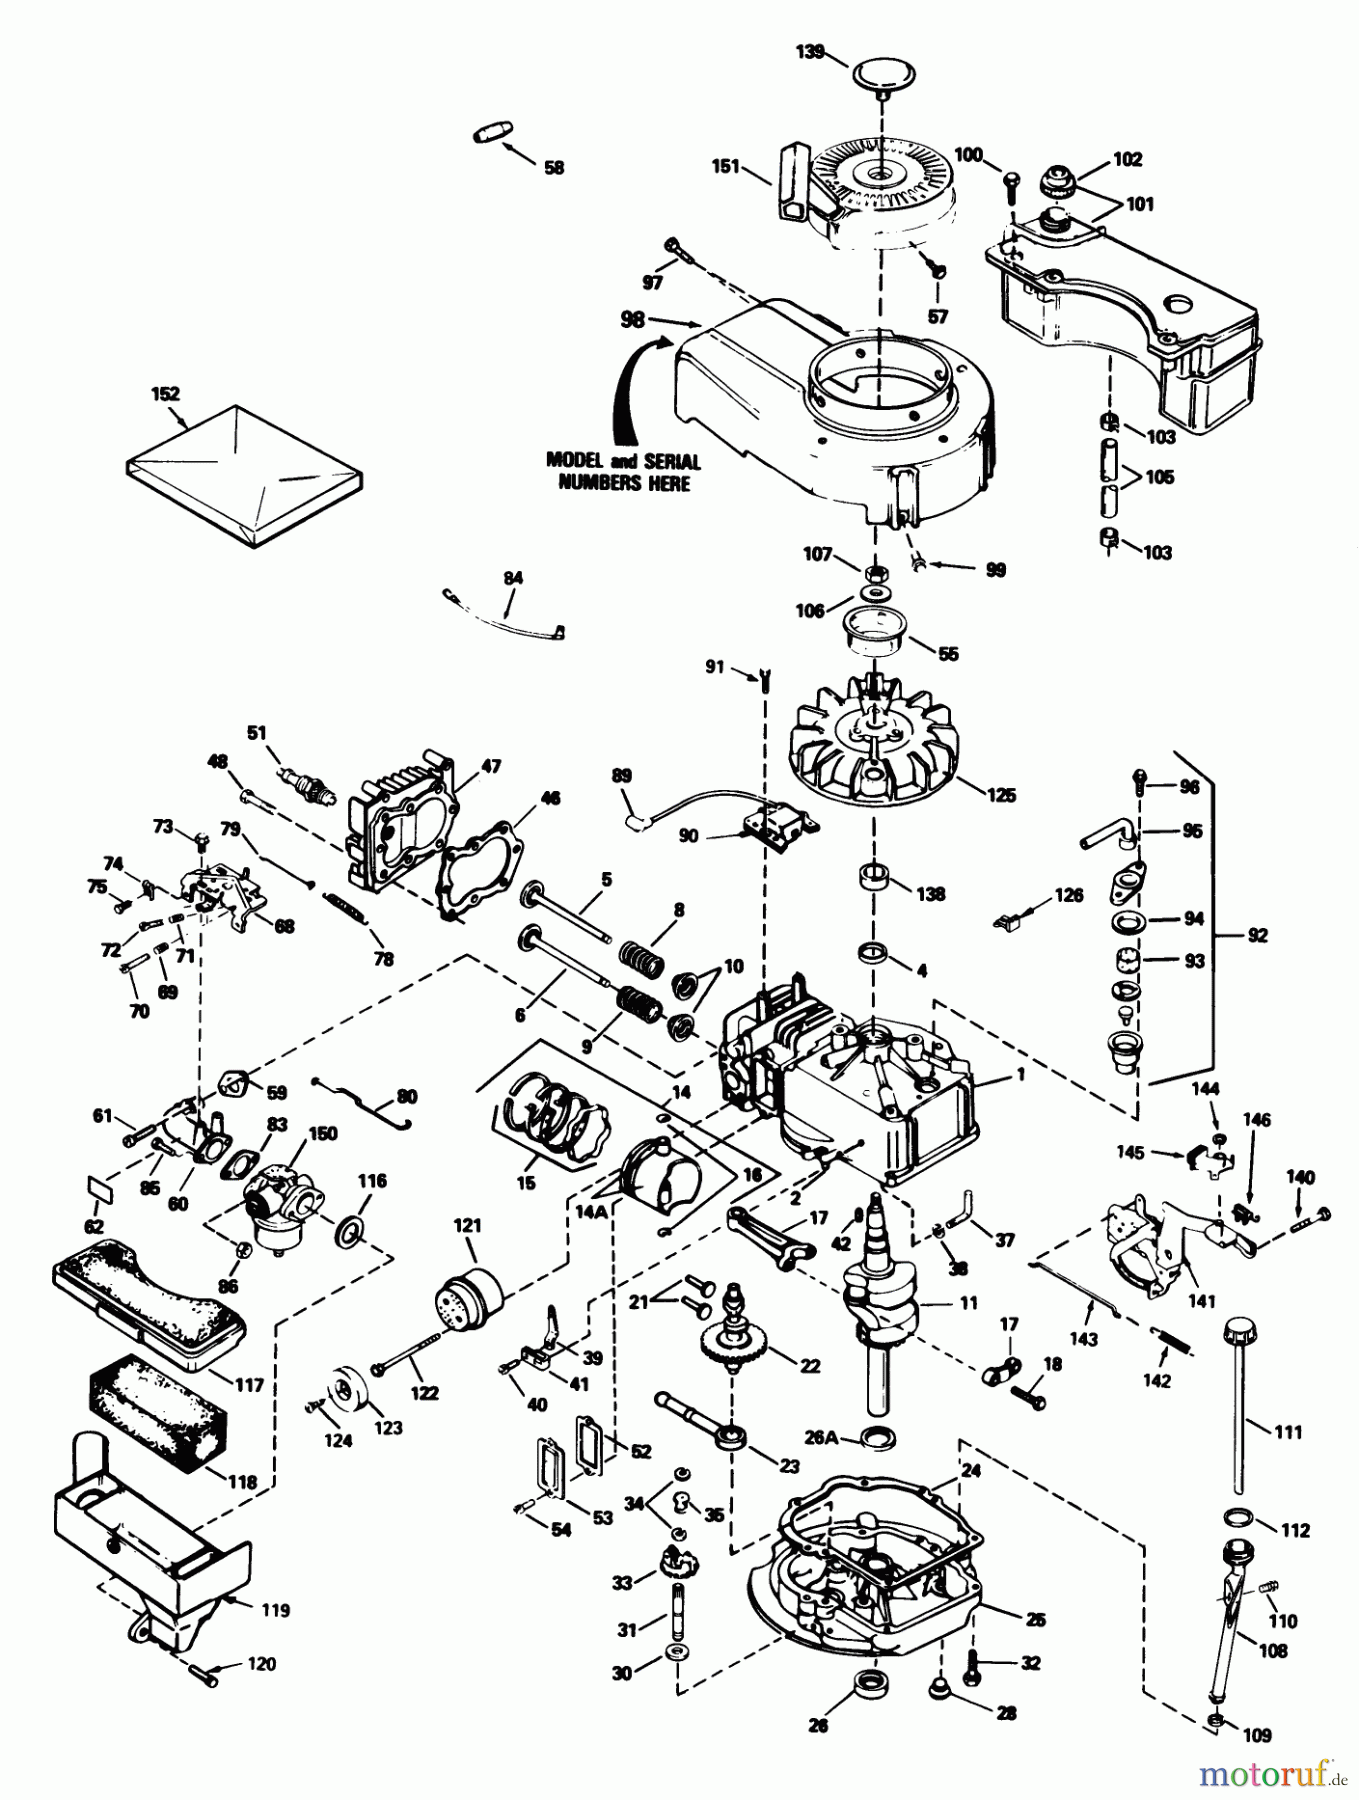  Toro Neu Mowers, Walk-Behind Seite 1 20692 - Toro Lawnmower, 1989 (9000001-9999999) ENGINE TECUMSEH MODEL NO. TVS100-44011B